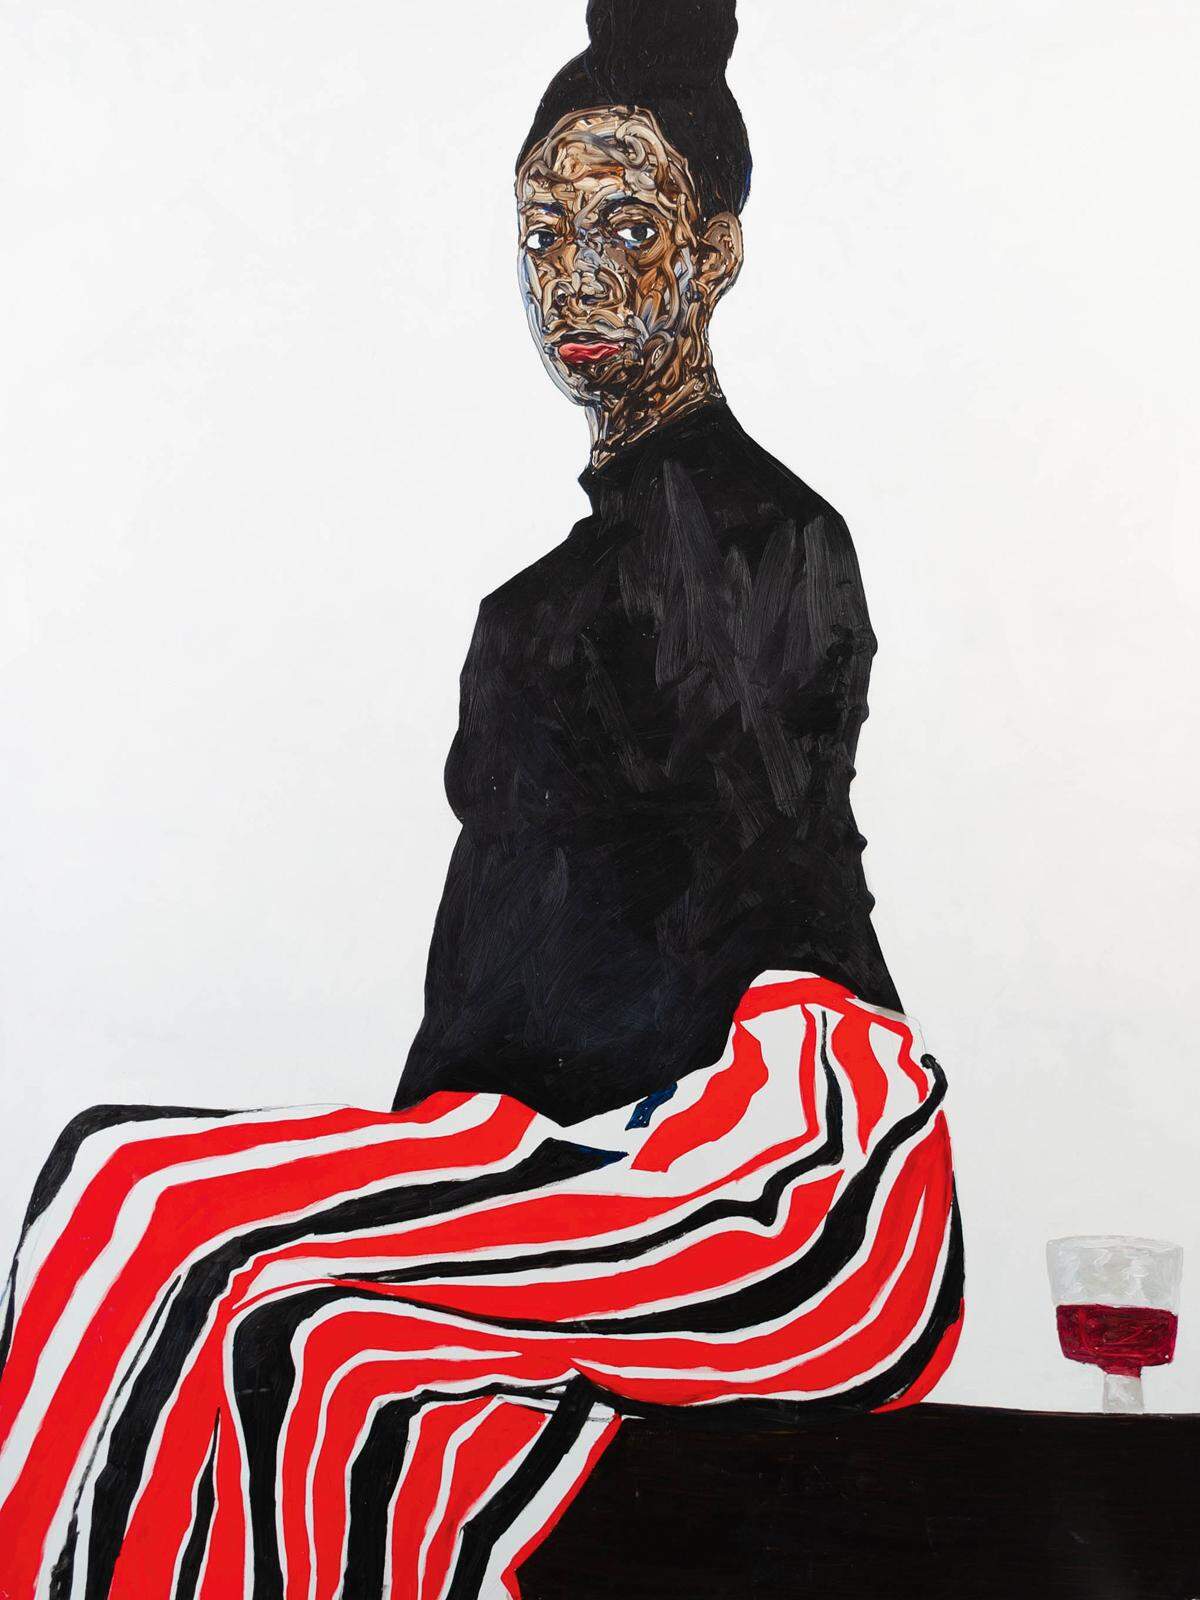 Ankauf. Das Guggenheim Museum hat im August „Joy Adenike“ von Amoako Boafo gekauft.